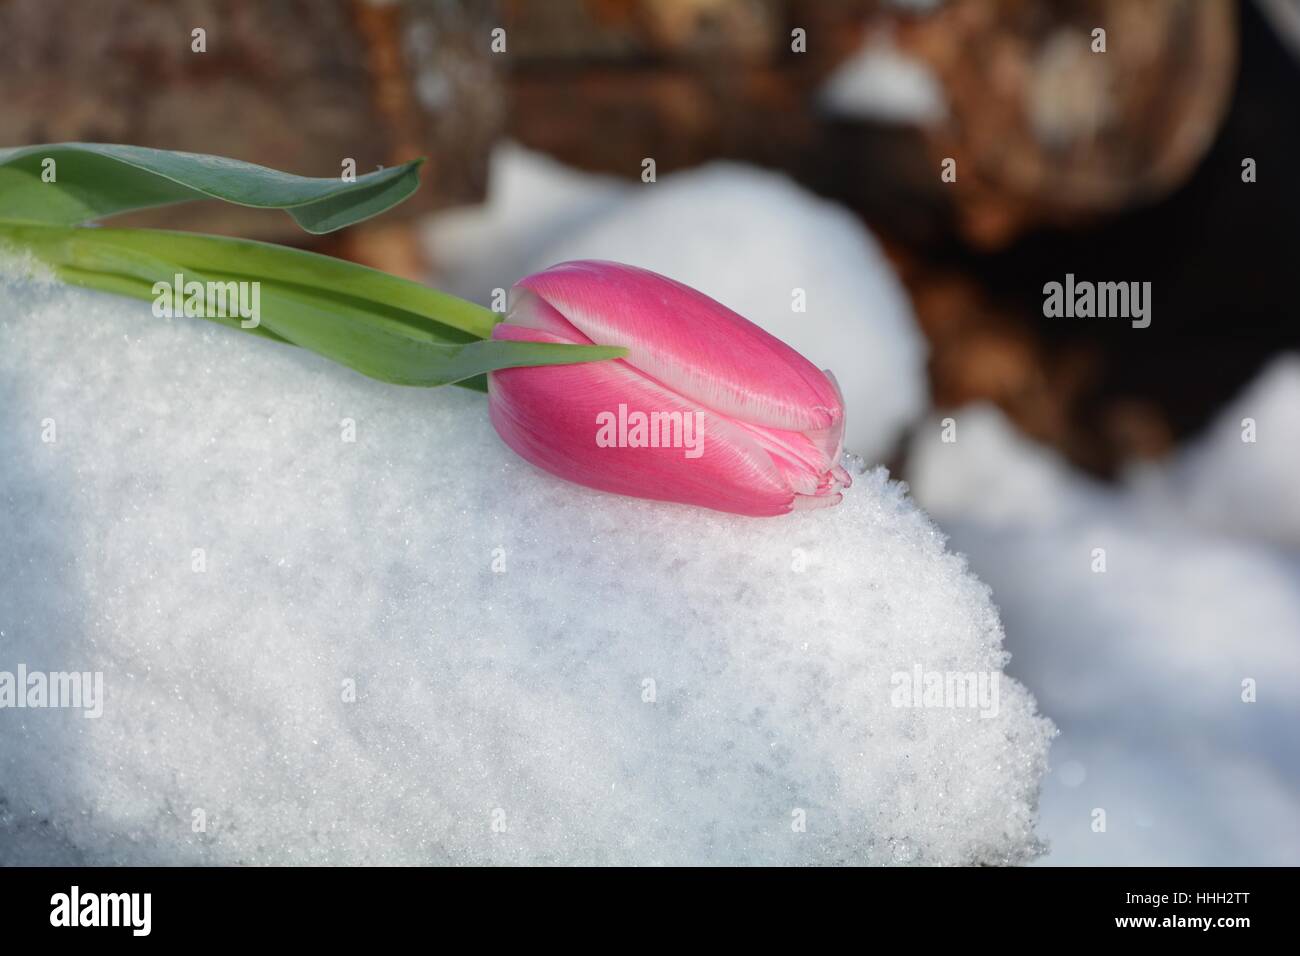 Rosa Tulpe (Tulipa) liegt auf verschneiten hölzernen Stamm Stockfoto